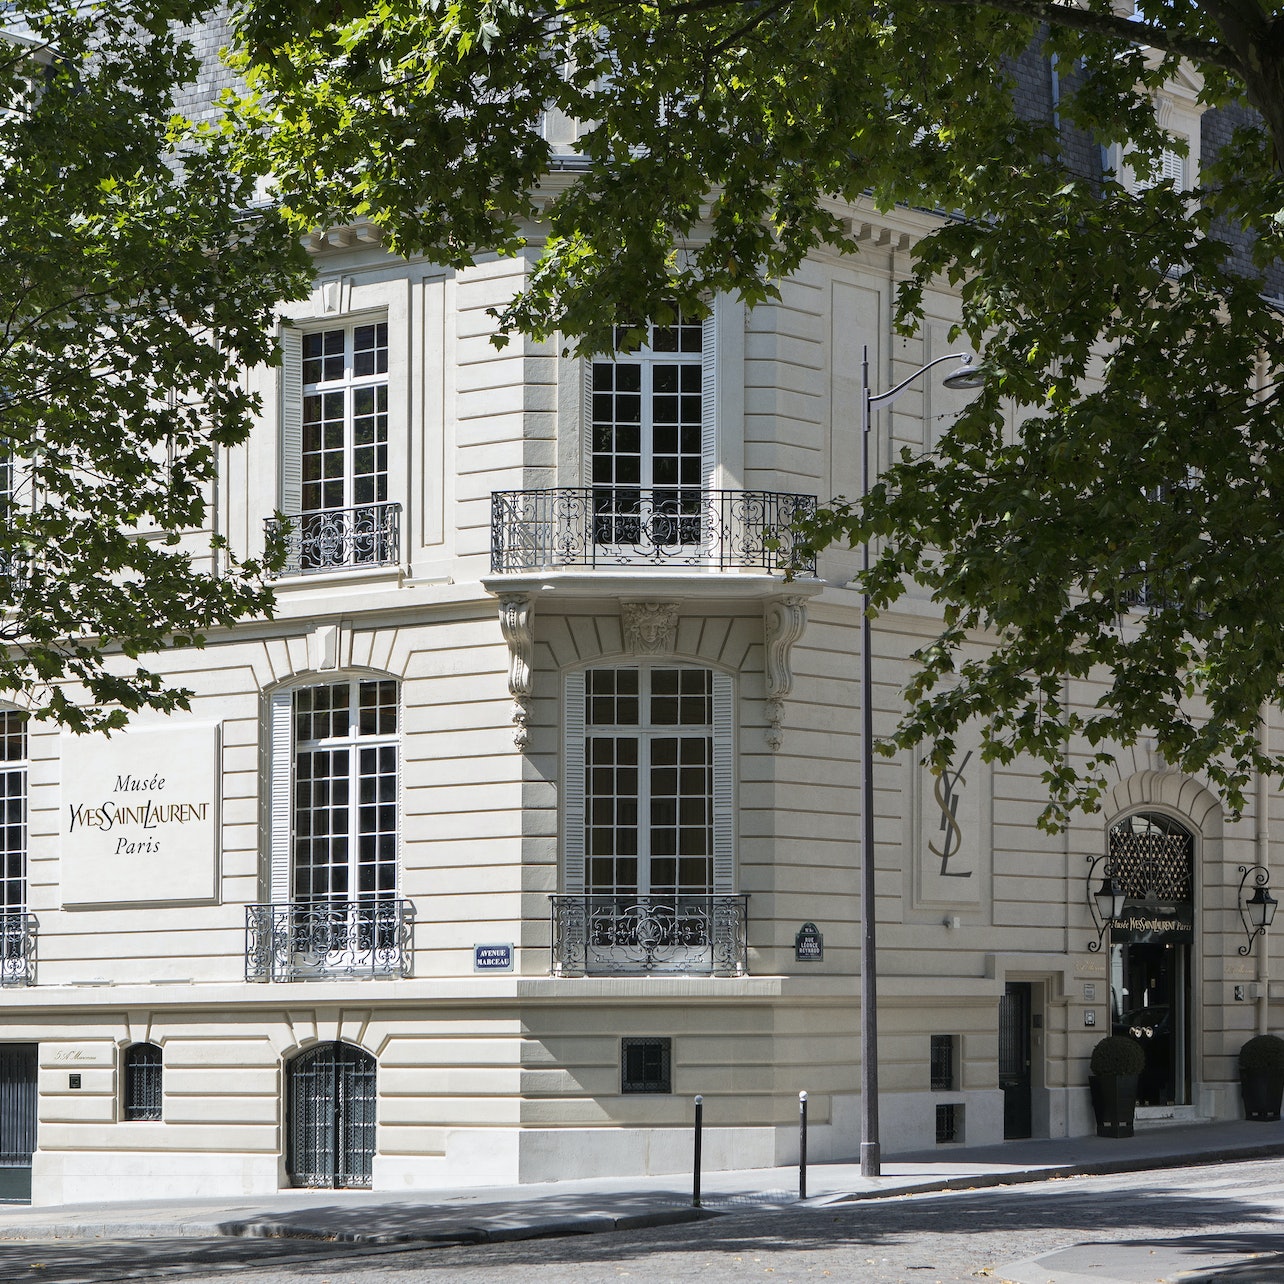 Picture of Musée Yves Saint Laurent Paris in Paris, France